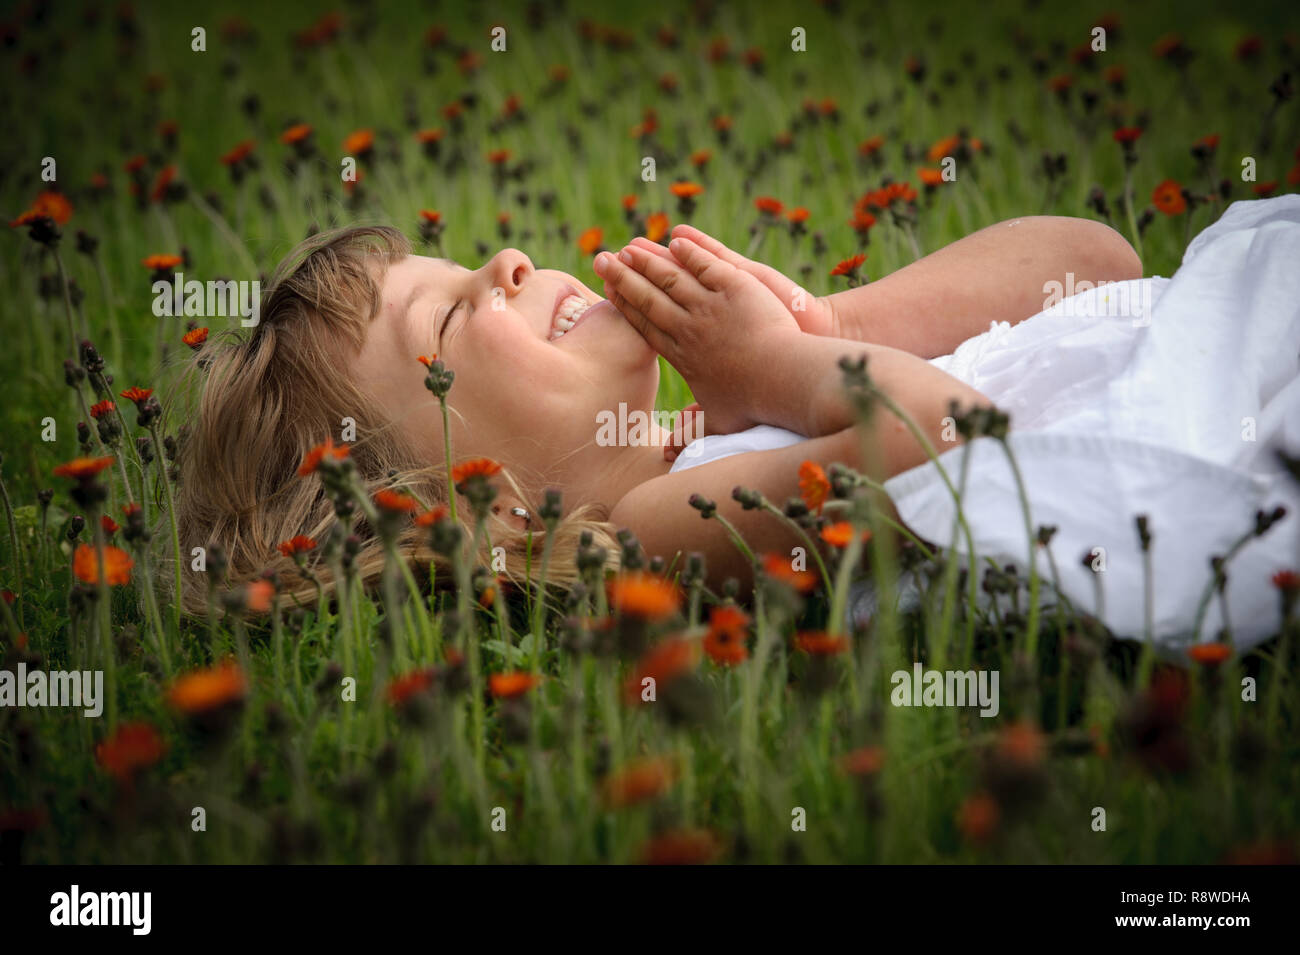 little girl praying on an orange flower carpet Stock Photo